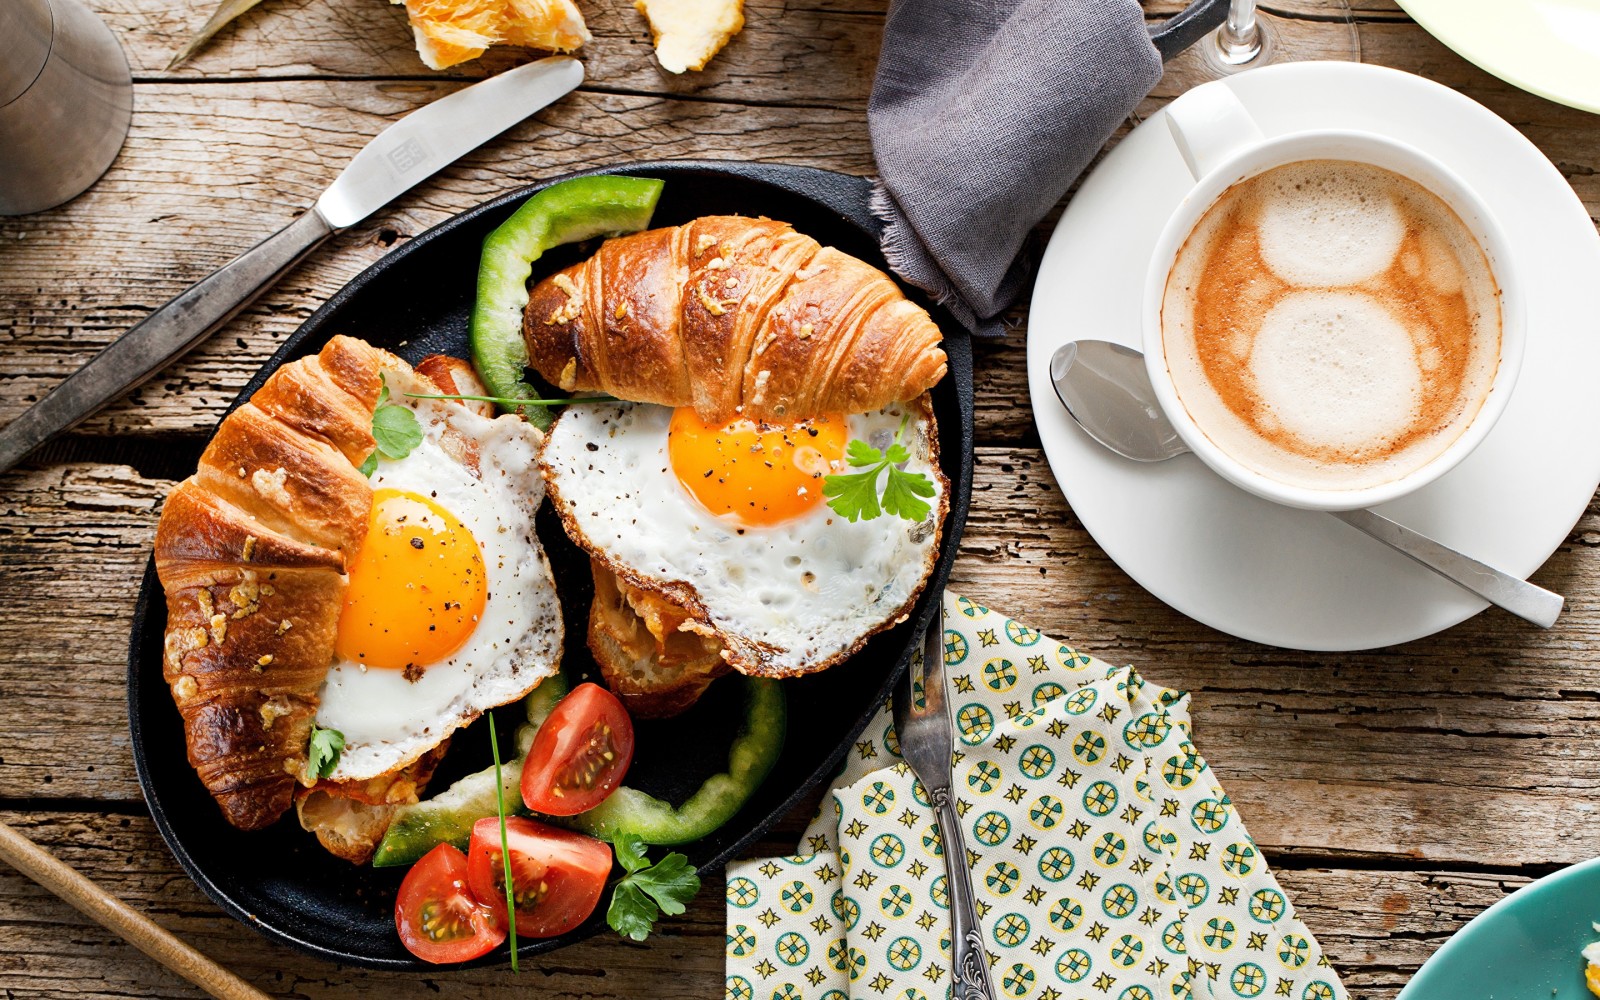 trứng, bánh mì sandwich, cà phê, bánh sừng bò